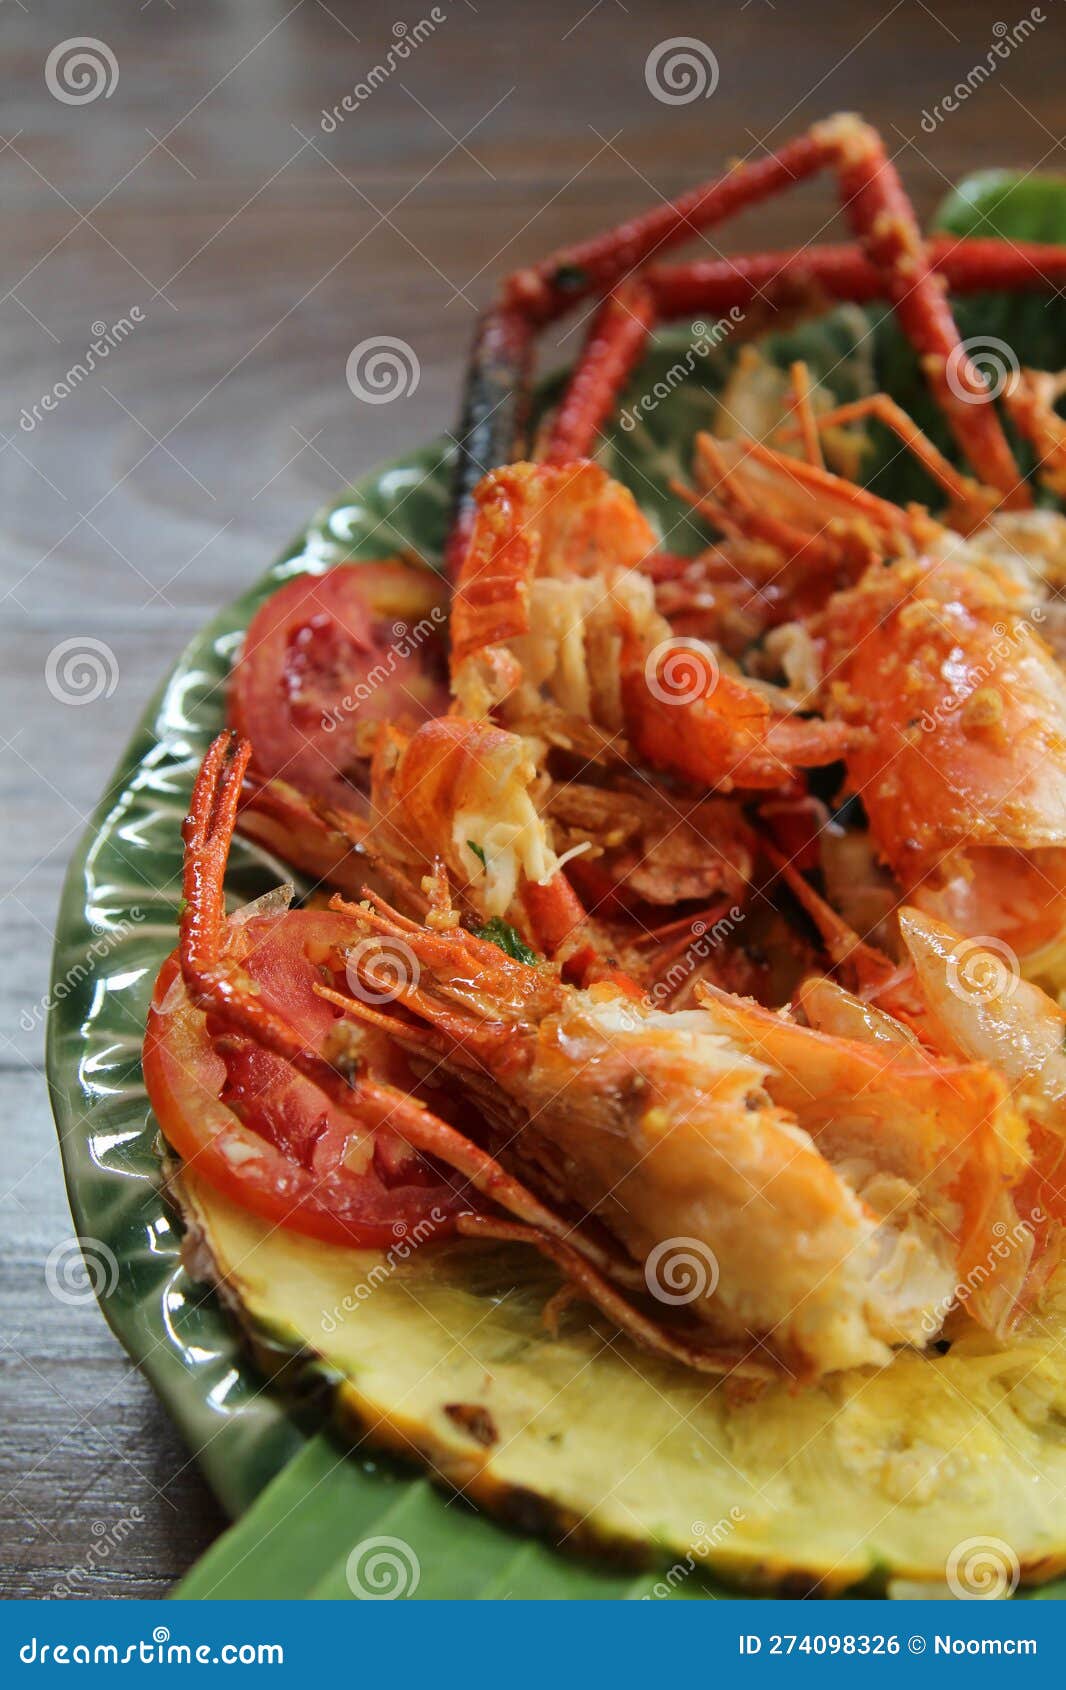 https://thumbs.dreamstime.com/z/shrimp-shell-head-waste-eating-full-banana-leaf-ceramic-plate-shrimp-shell-eating-full-ceramic-plate-274098326.jpg